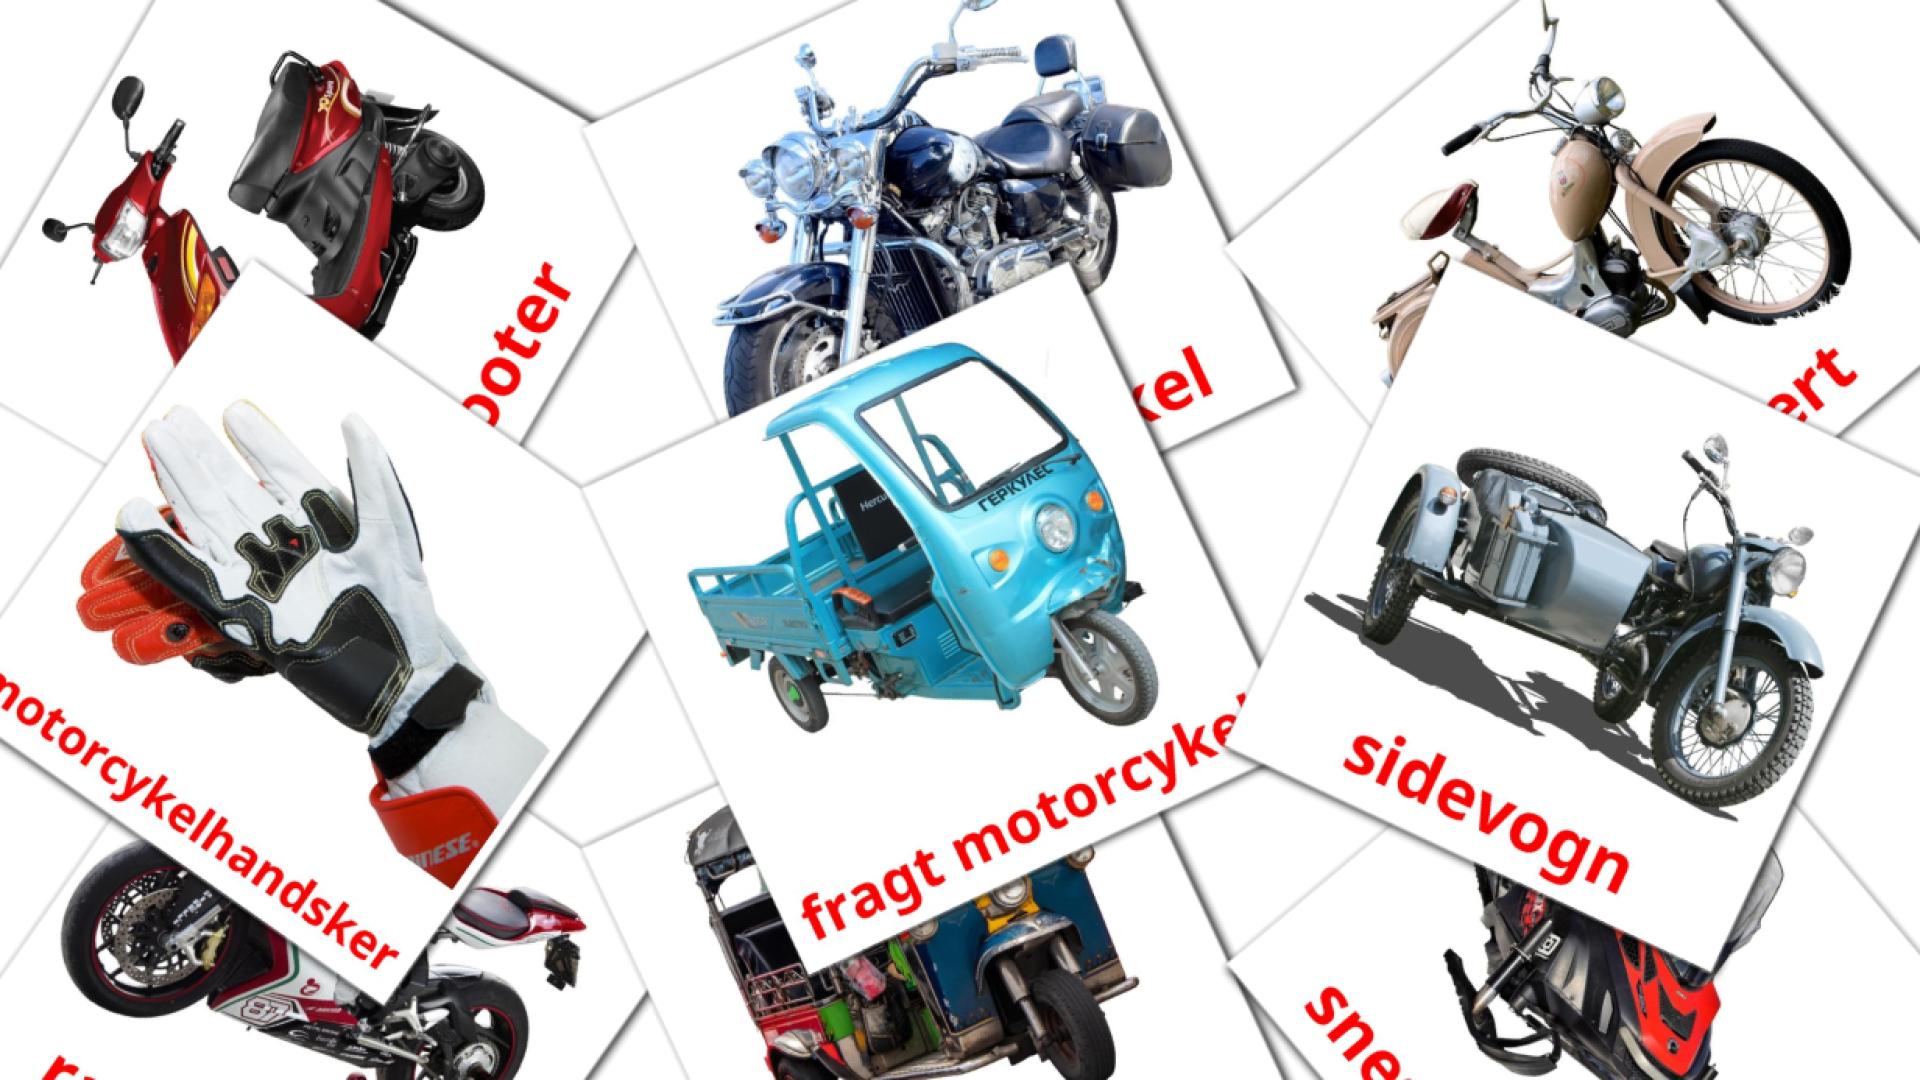 Imagiers Motorcykler